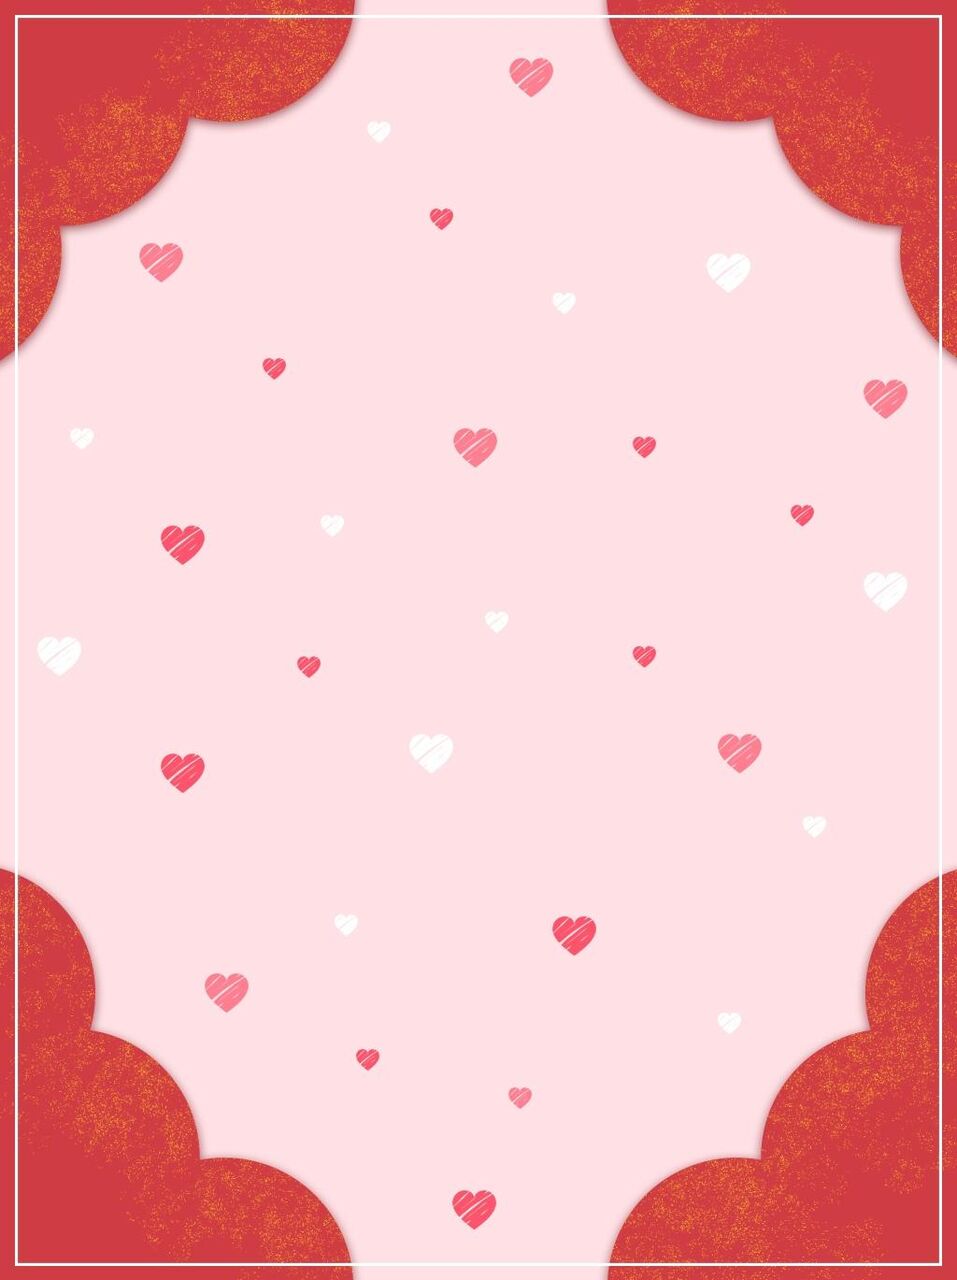 ラッキーカラーのピンクの壁紙ロマンチックなバレンタインデーの愛の背景 高精細画像 材料入力します 壁紙